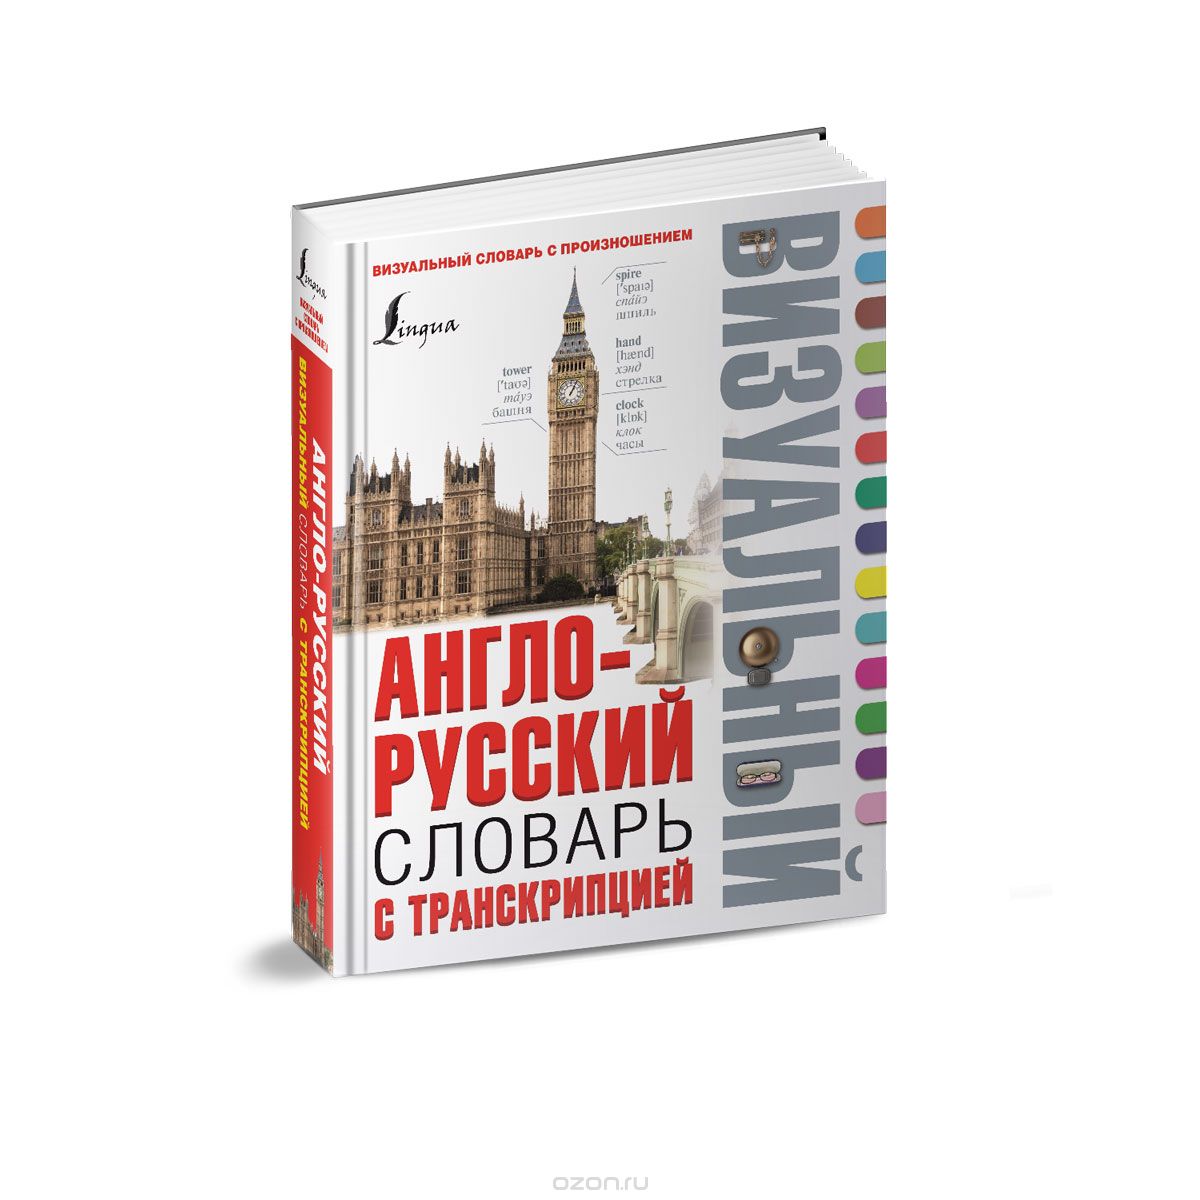 Скачать книгу "Англо-русский визуальный словарь с транскрипцией, А. В. Гунин"